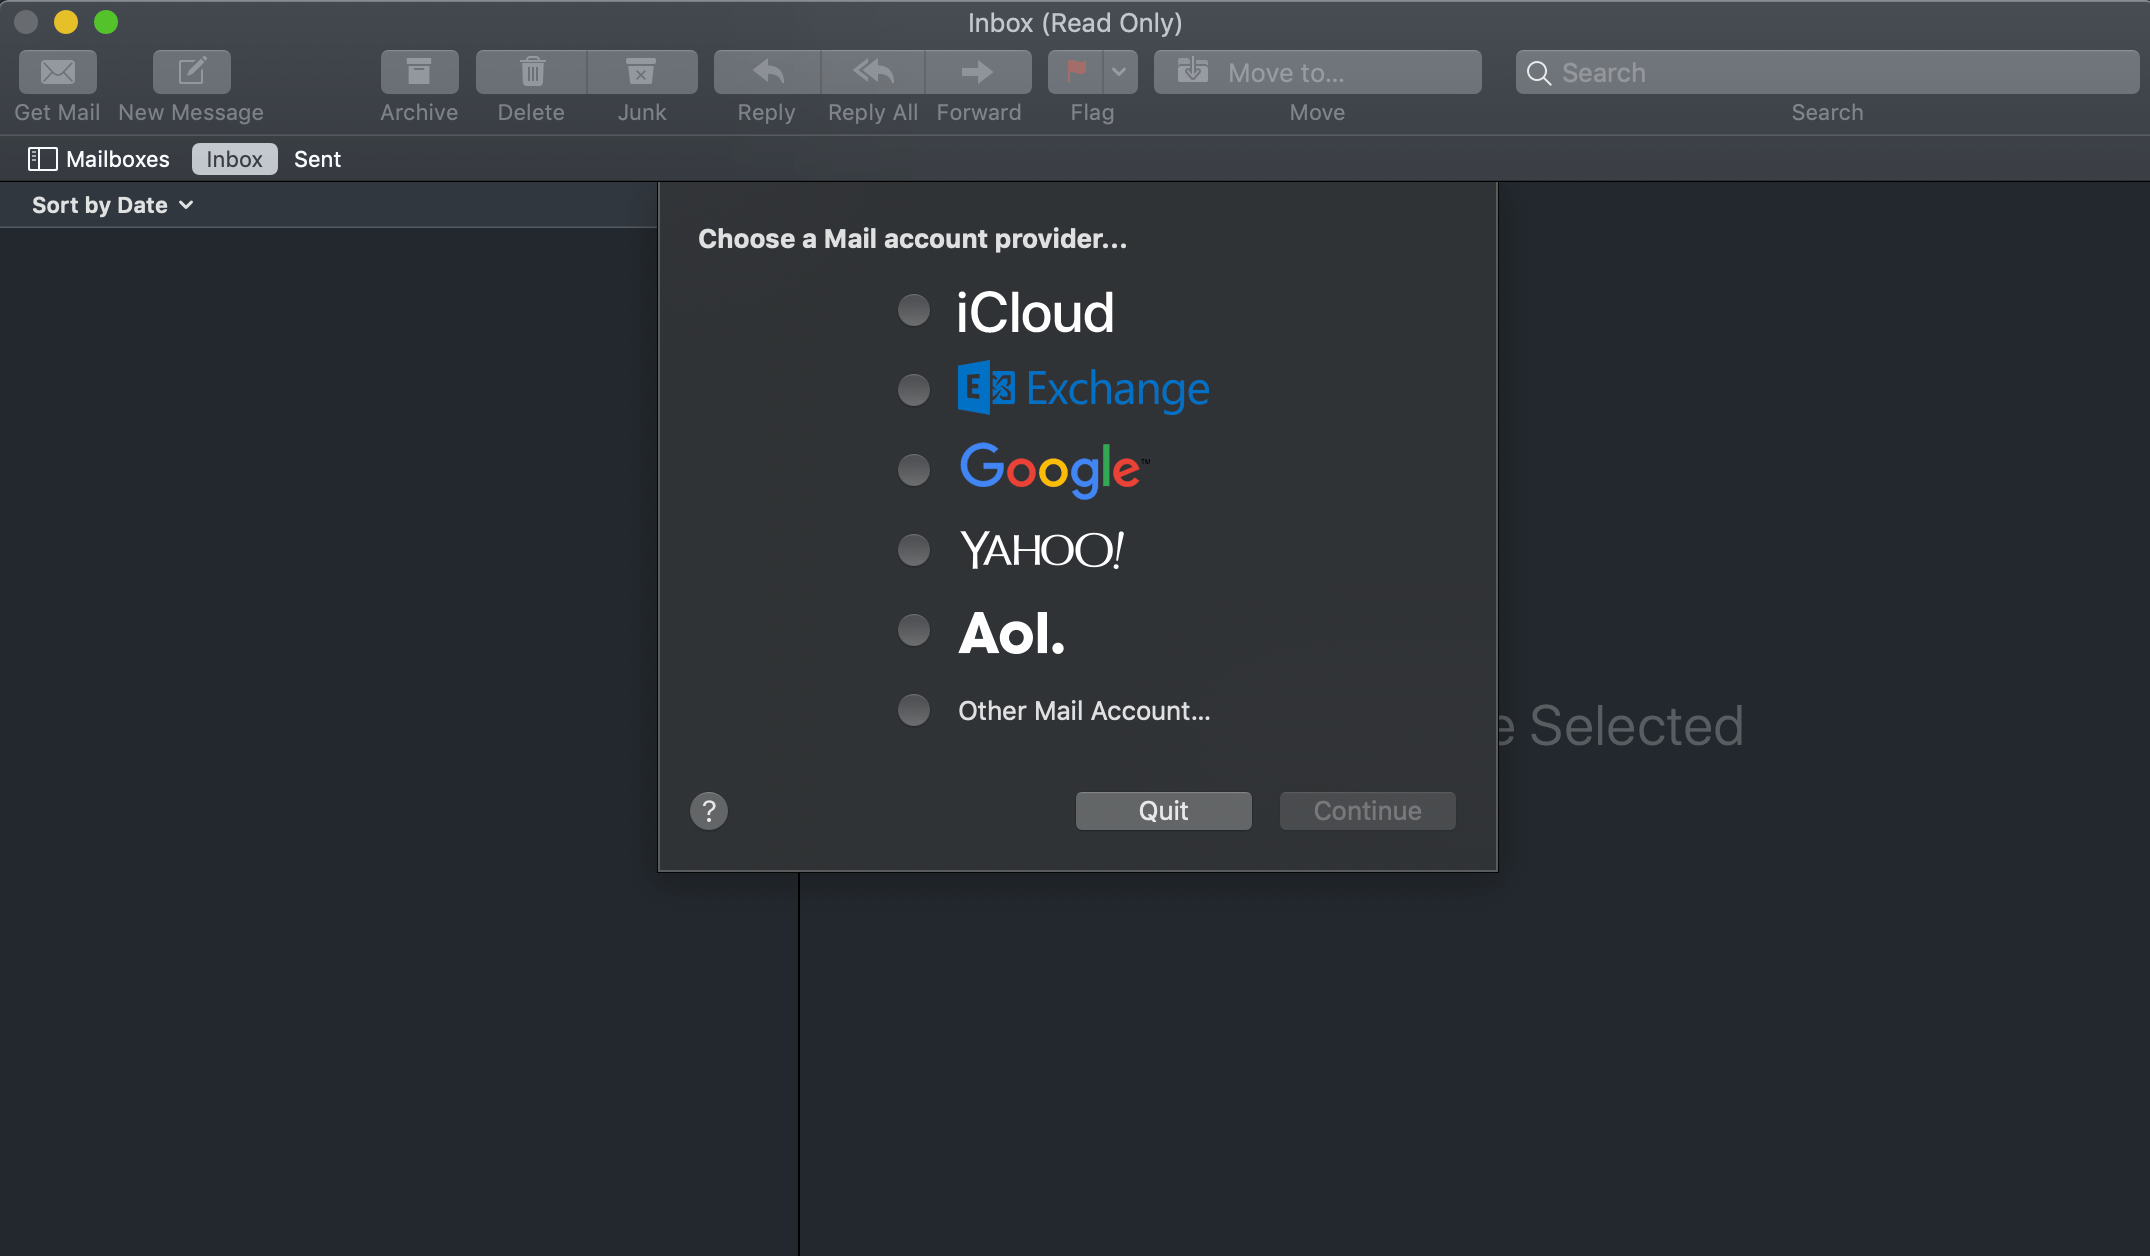 Captura de pantalla de las opciones para compartir que ofrece la aplicación de correo electrónico de Mac, incluidos iCloud, Exchange, Google, Yahoo y AOL.